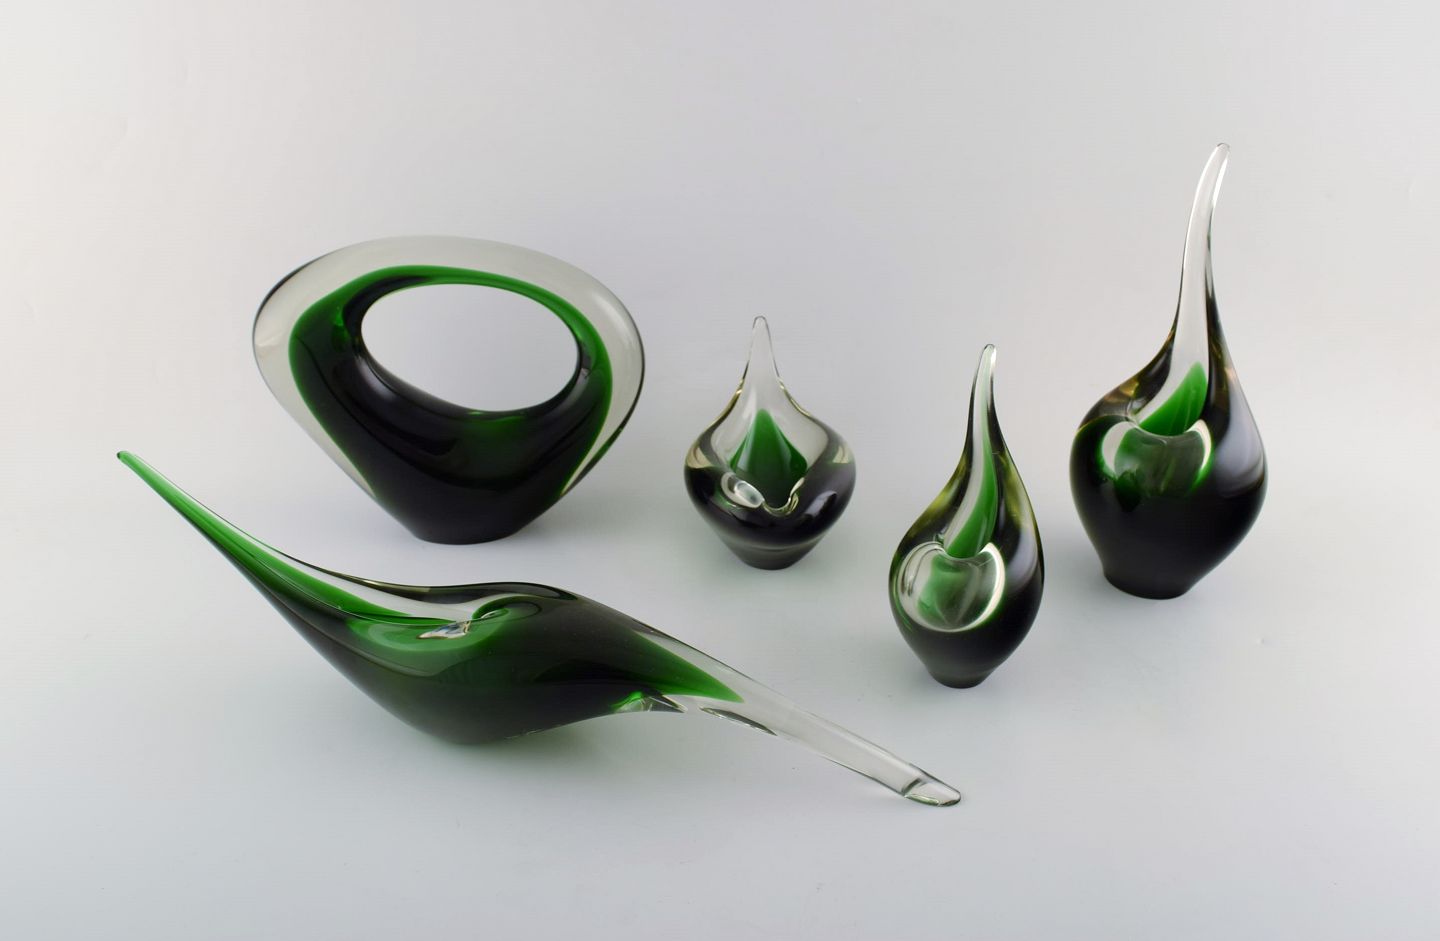 www.Antikvitet.net - Lütken for Samling af fem sjældne Flamingo" vaser og skulpturer i grønt kunstglas.